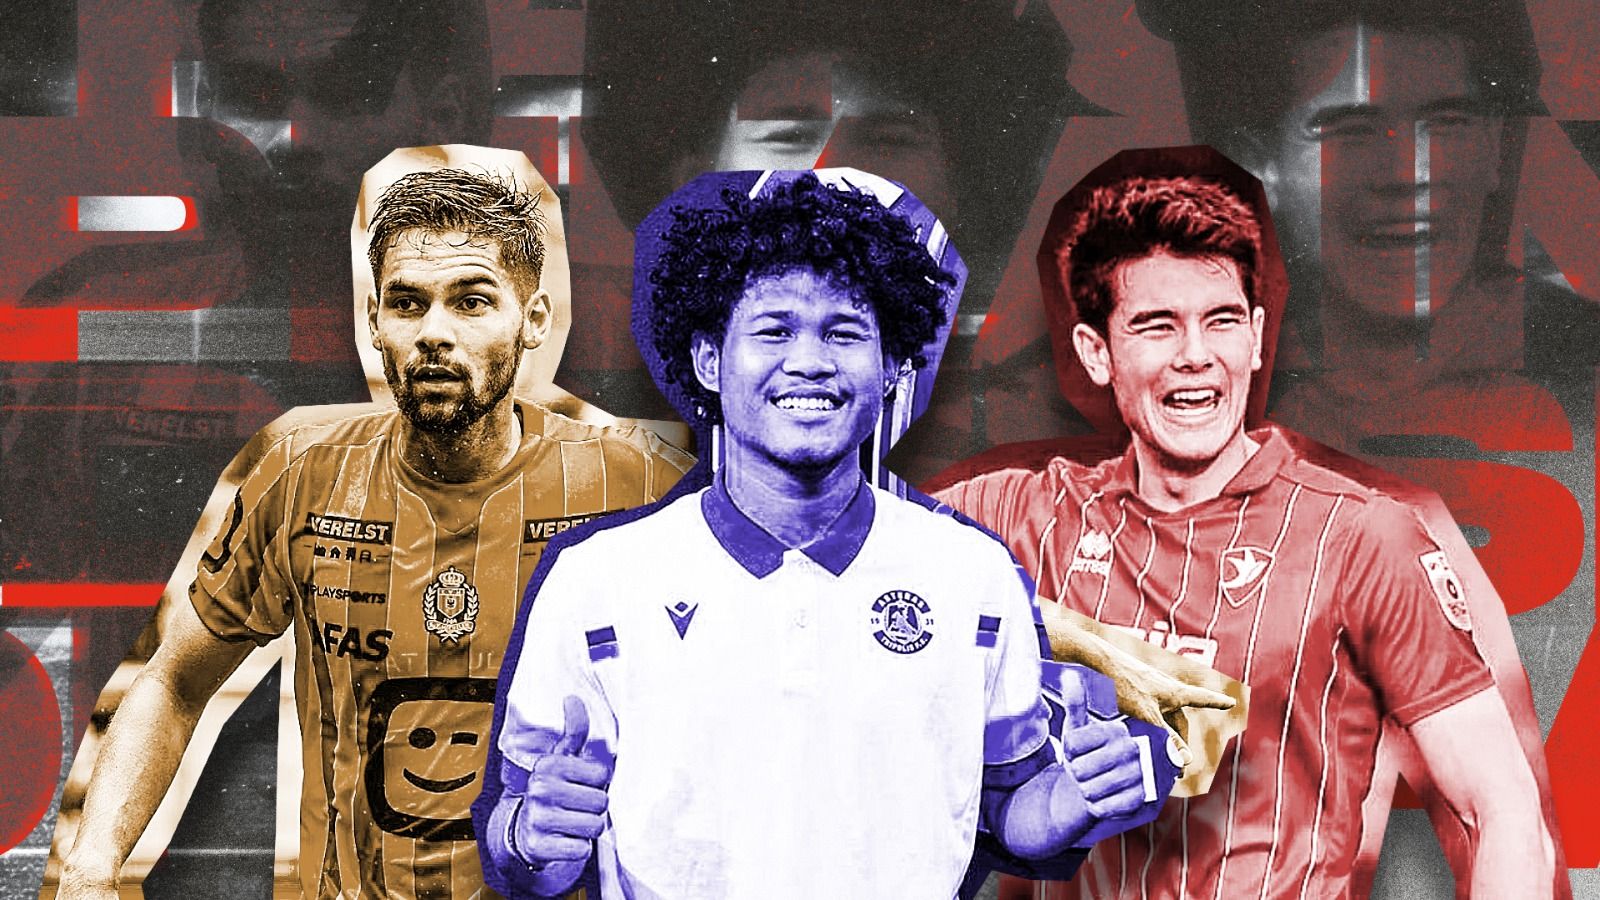 Rapor Pemain Indonesia di Eropa: Satu Cetak Gol dan Ada yang Gagal, Tiga Nama Absen